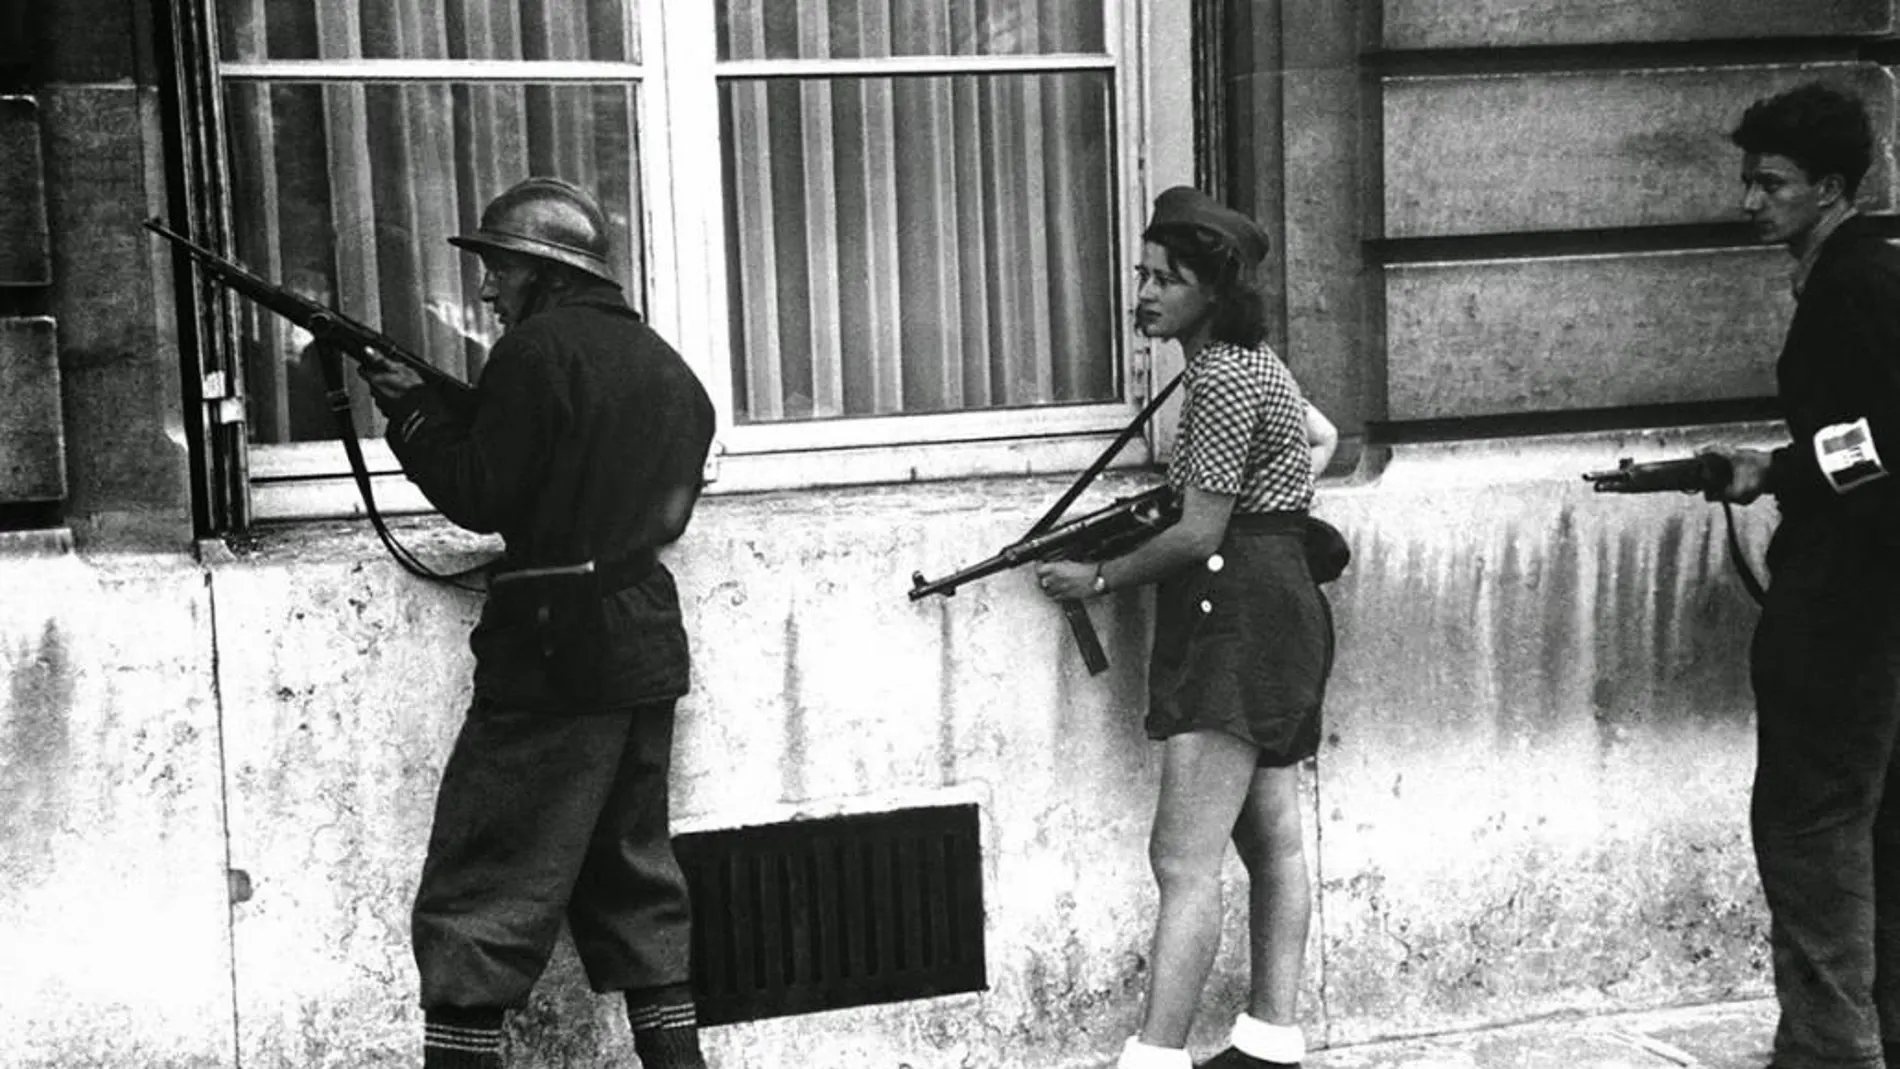 18 años es la edad que tenía Simone Sigouin (en el centro de la imagen) cuando se tomó esta fotografía, convertida en un símbolo para la resistencia femenina francesa